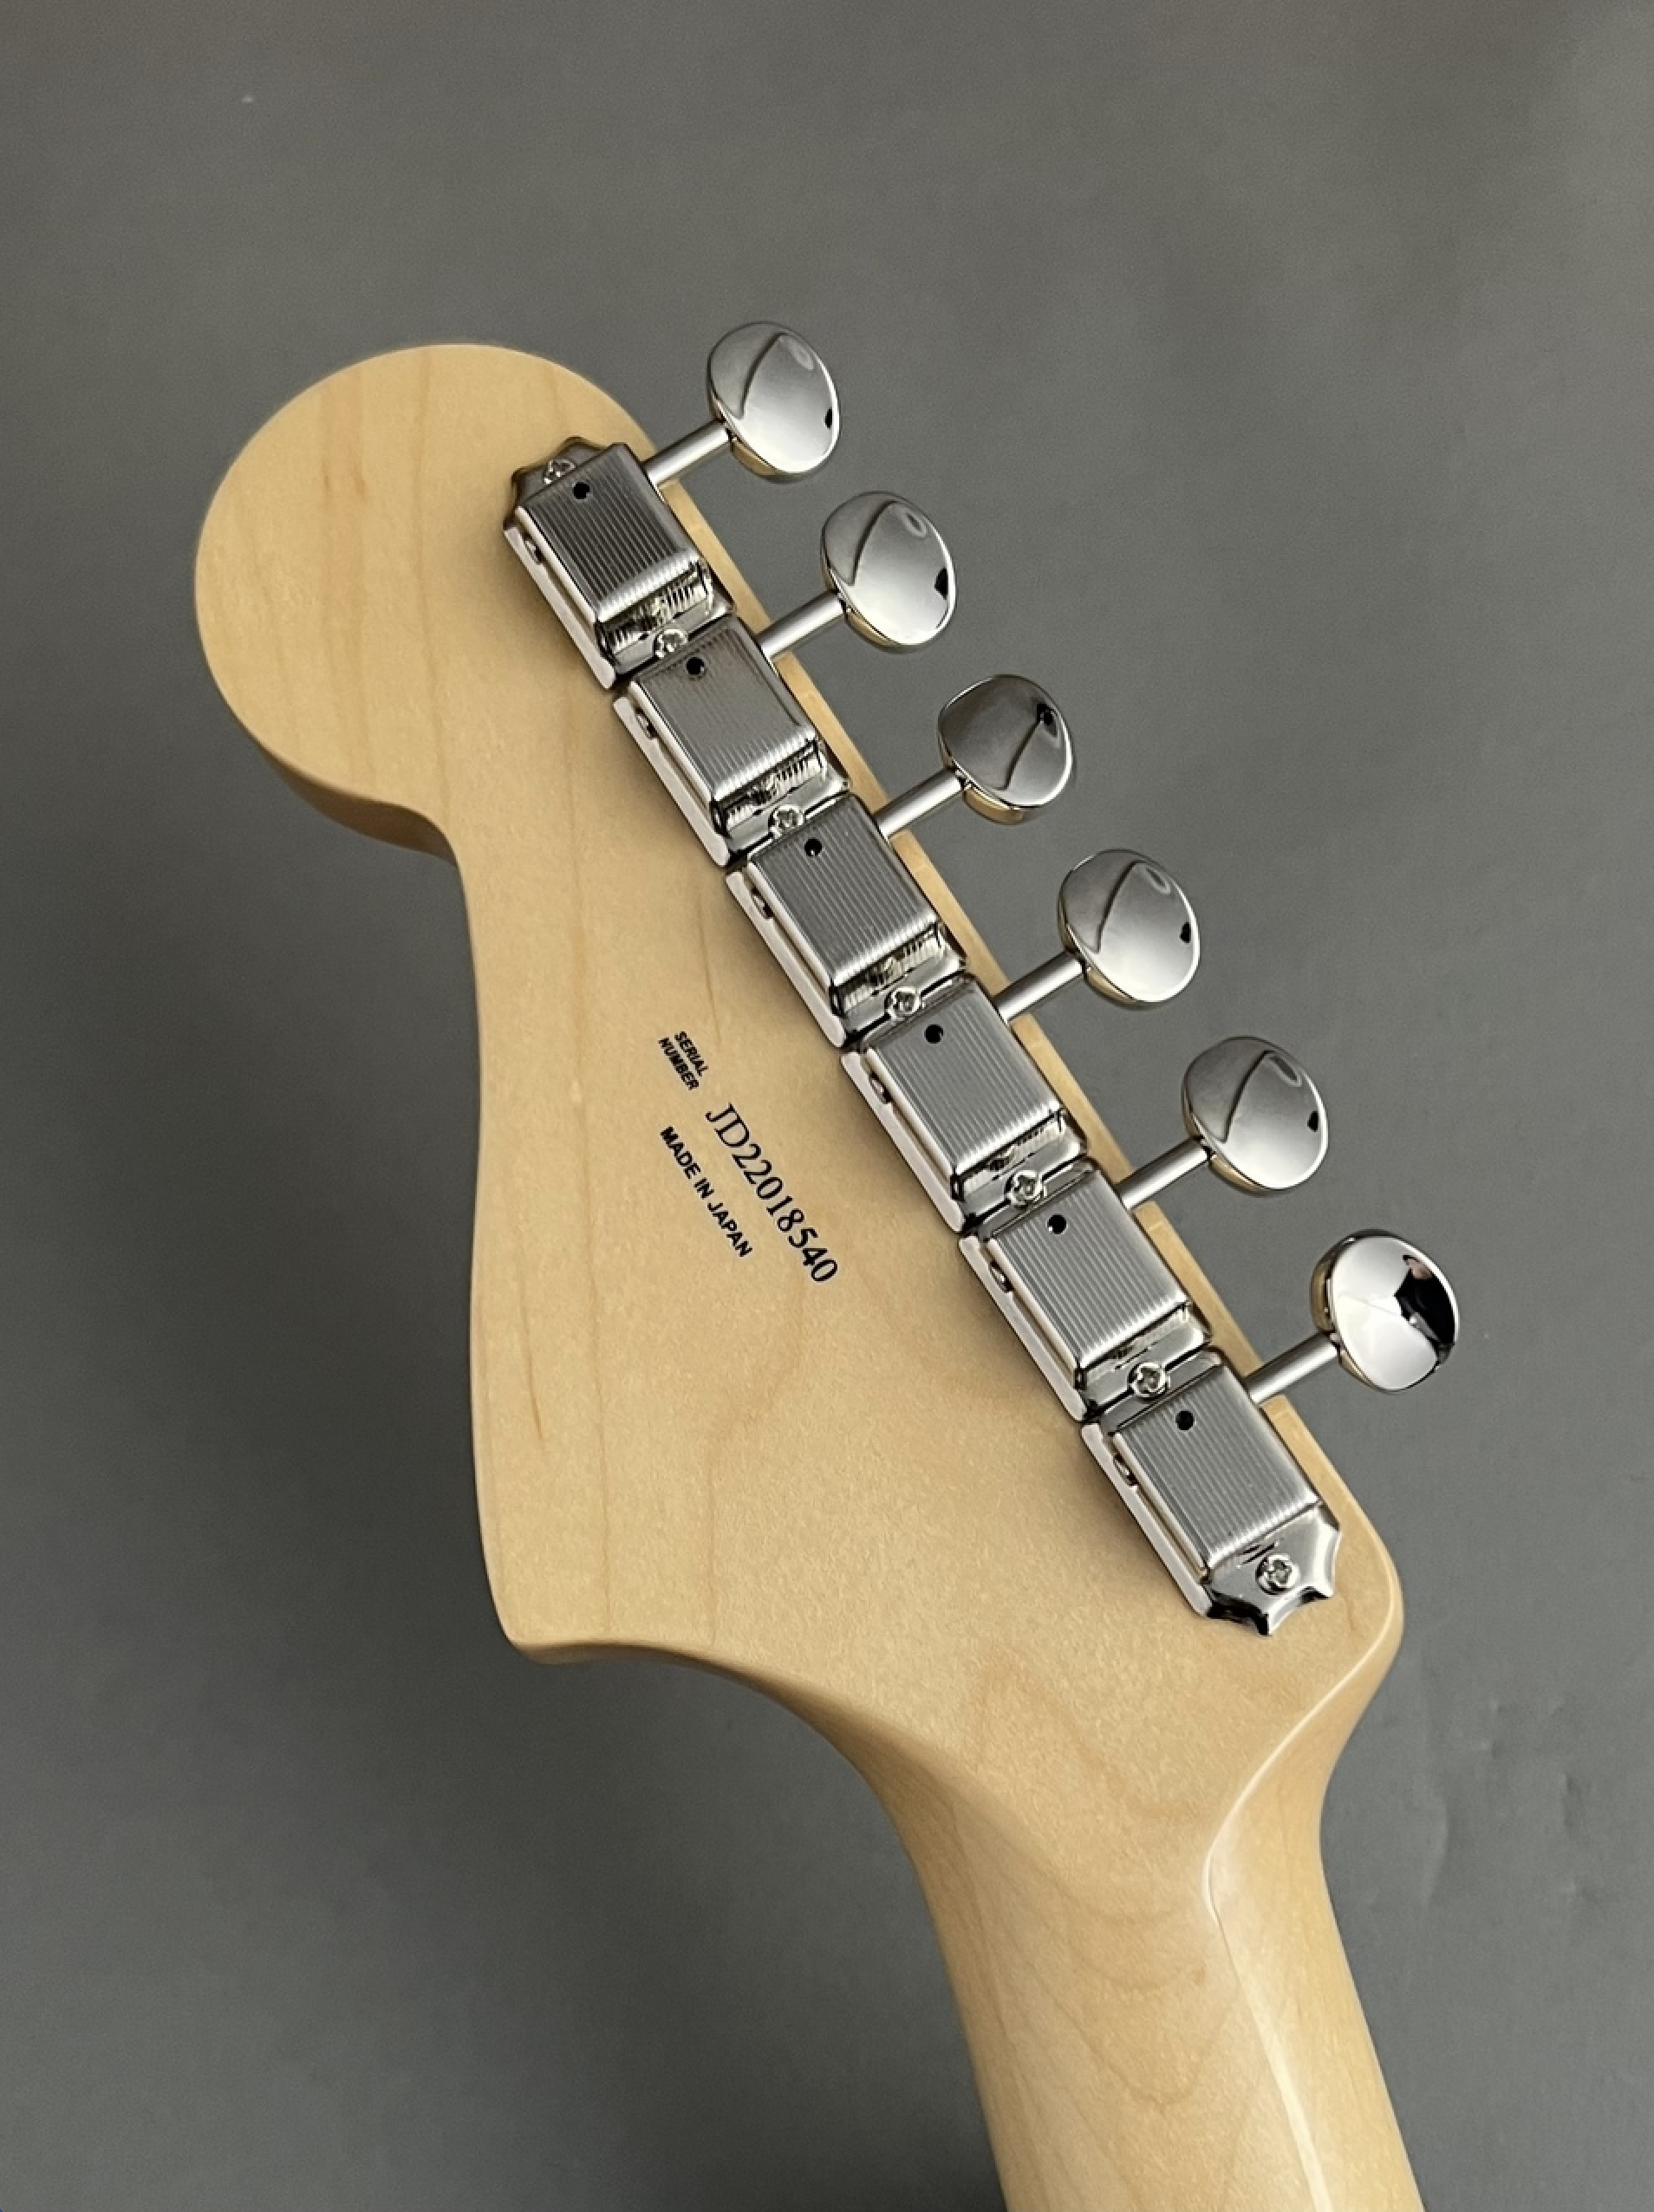 2022 Fender Traditional 60s Jaguar FSR Black w/ Gold Hardware